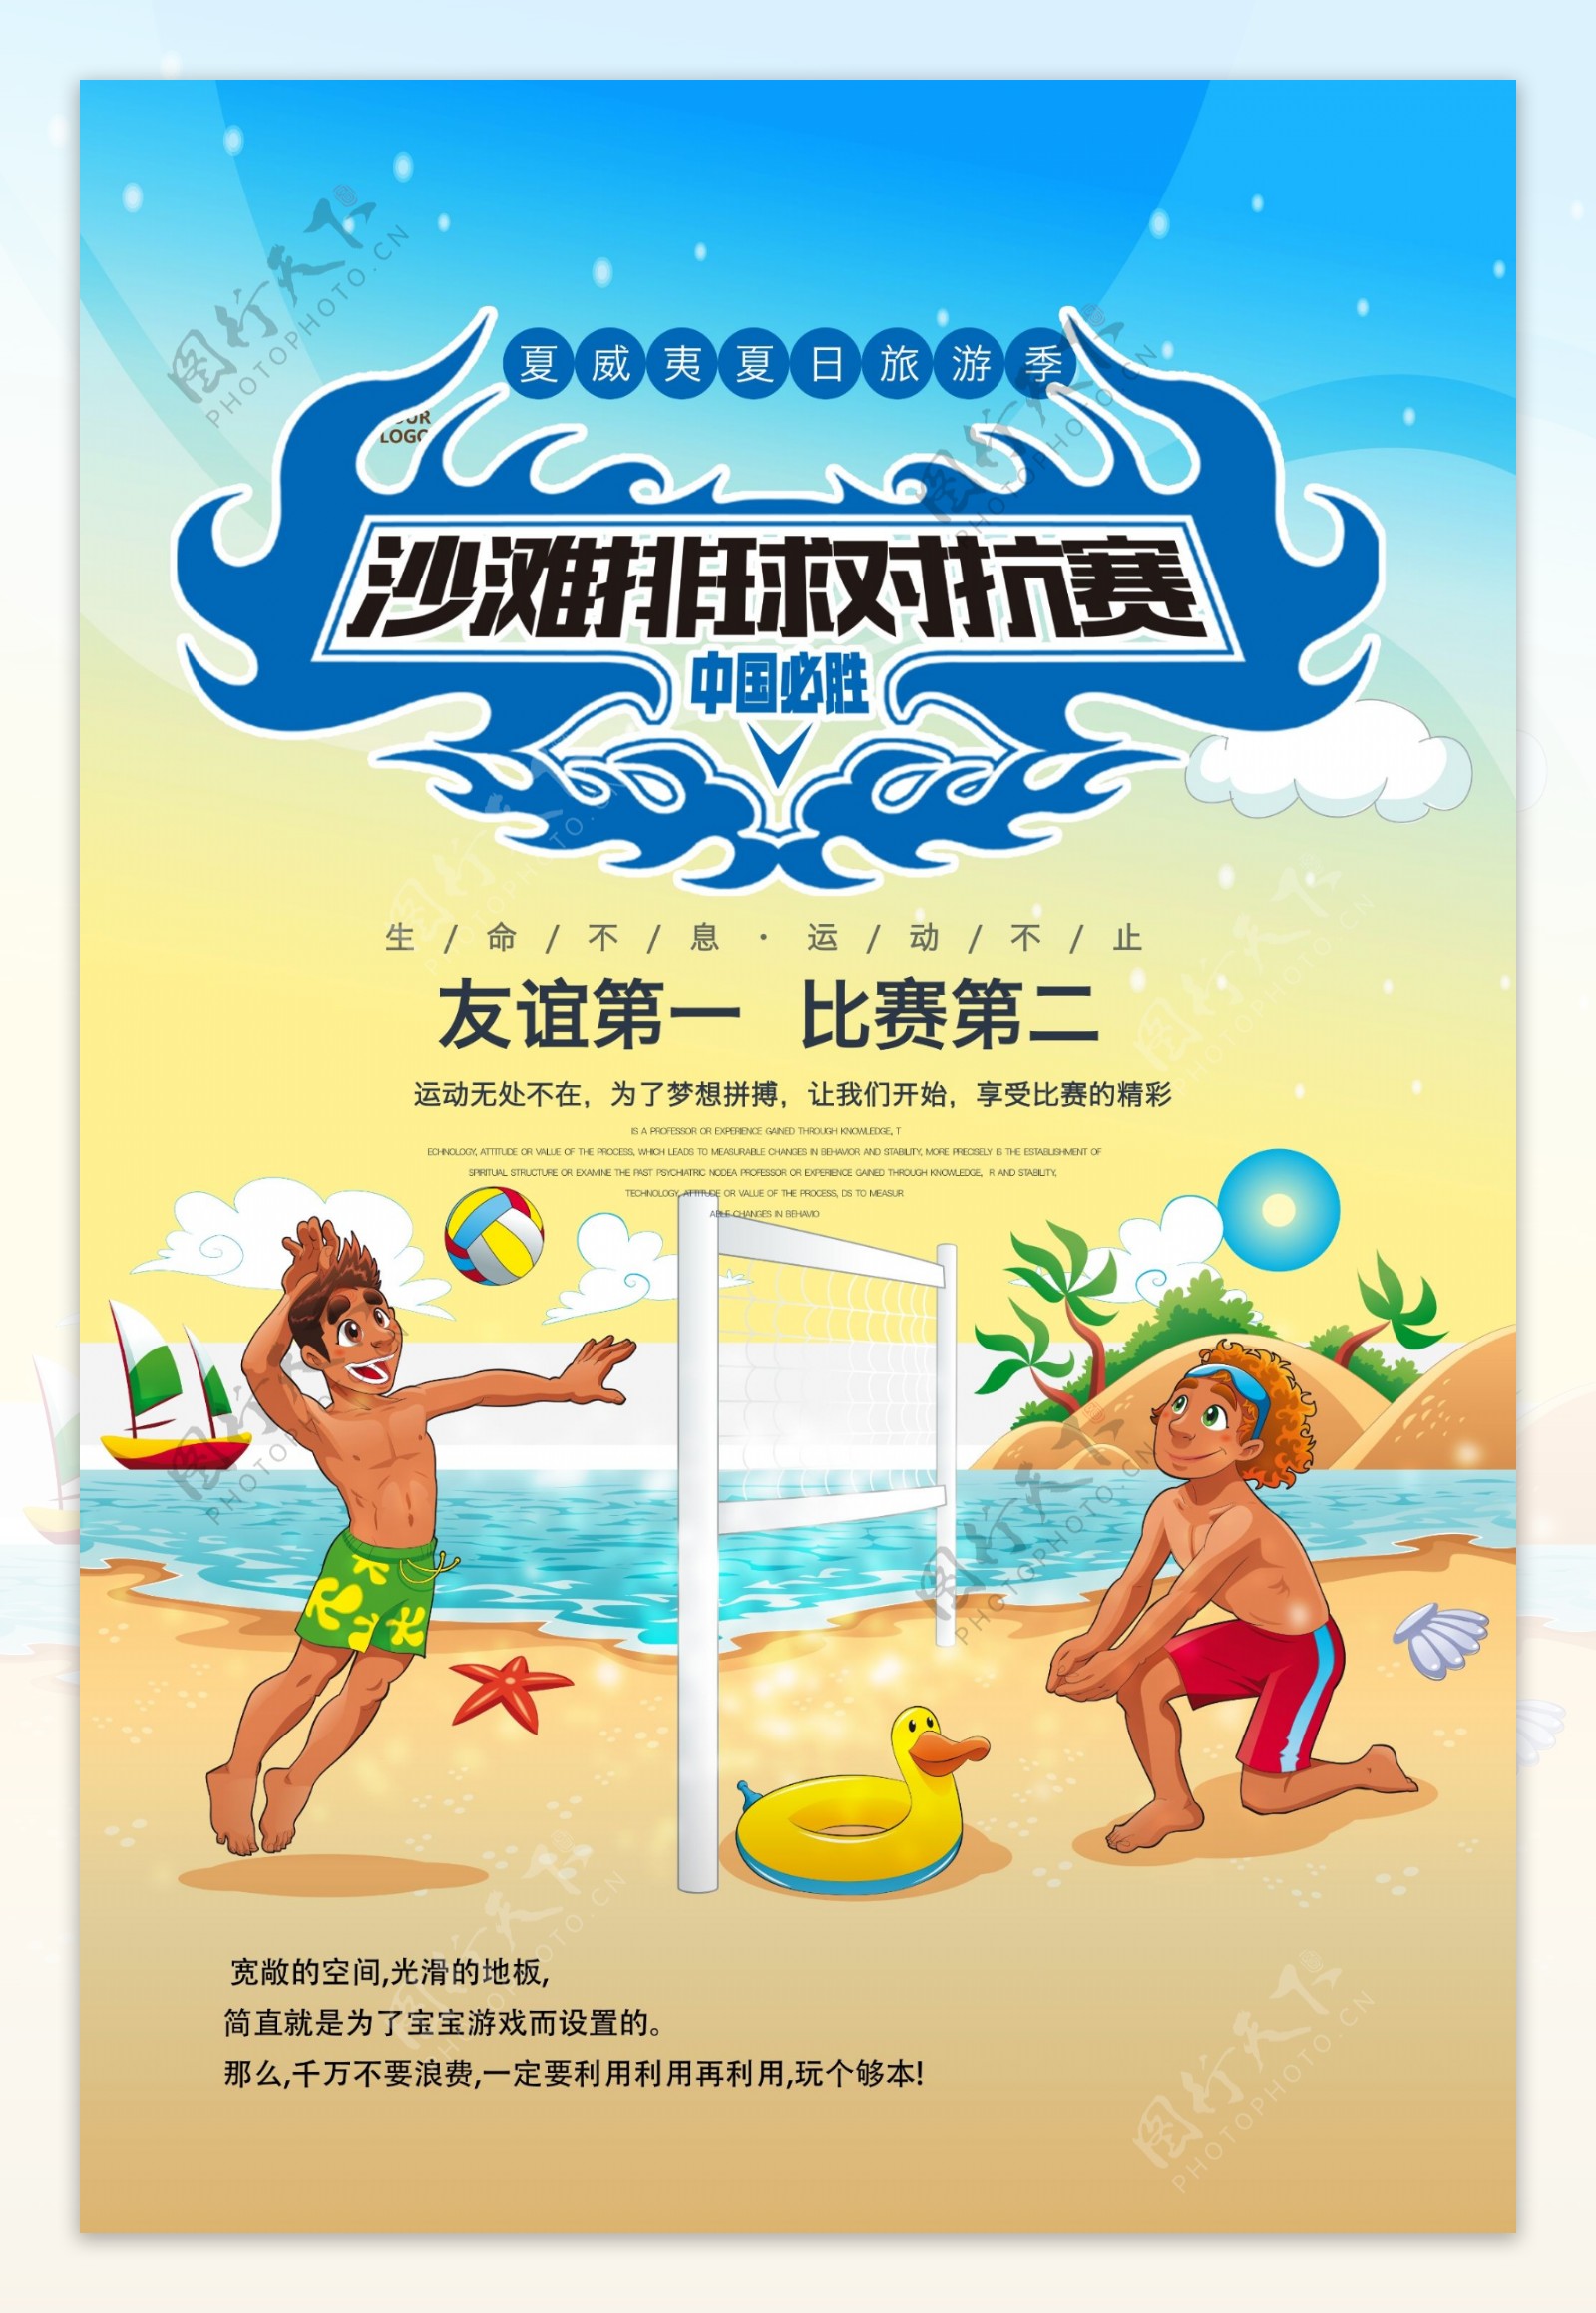 沙滩排球体育运动比赛健身户外宣传海报.psd